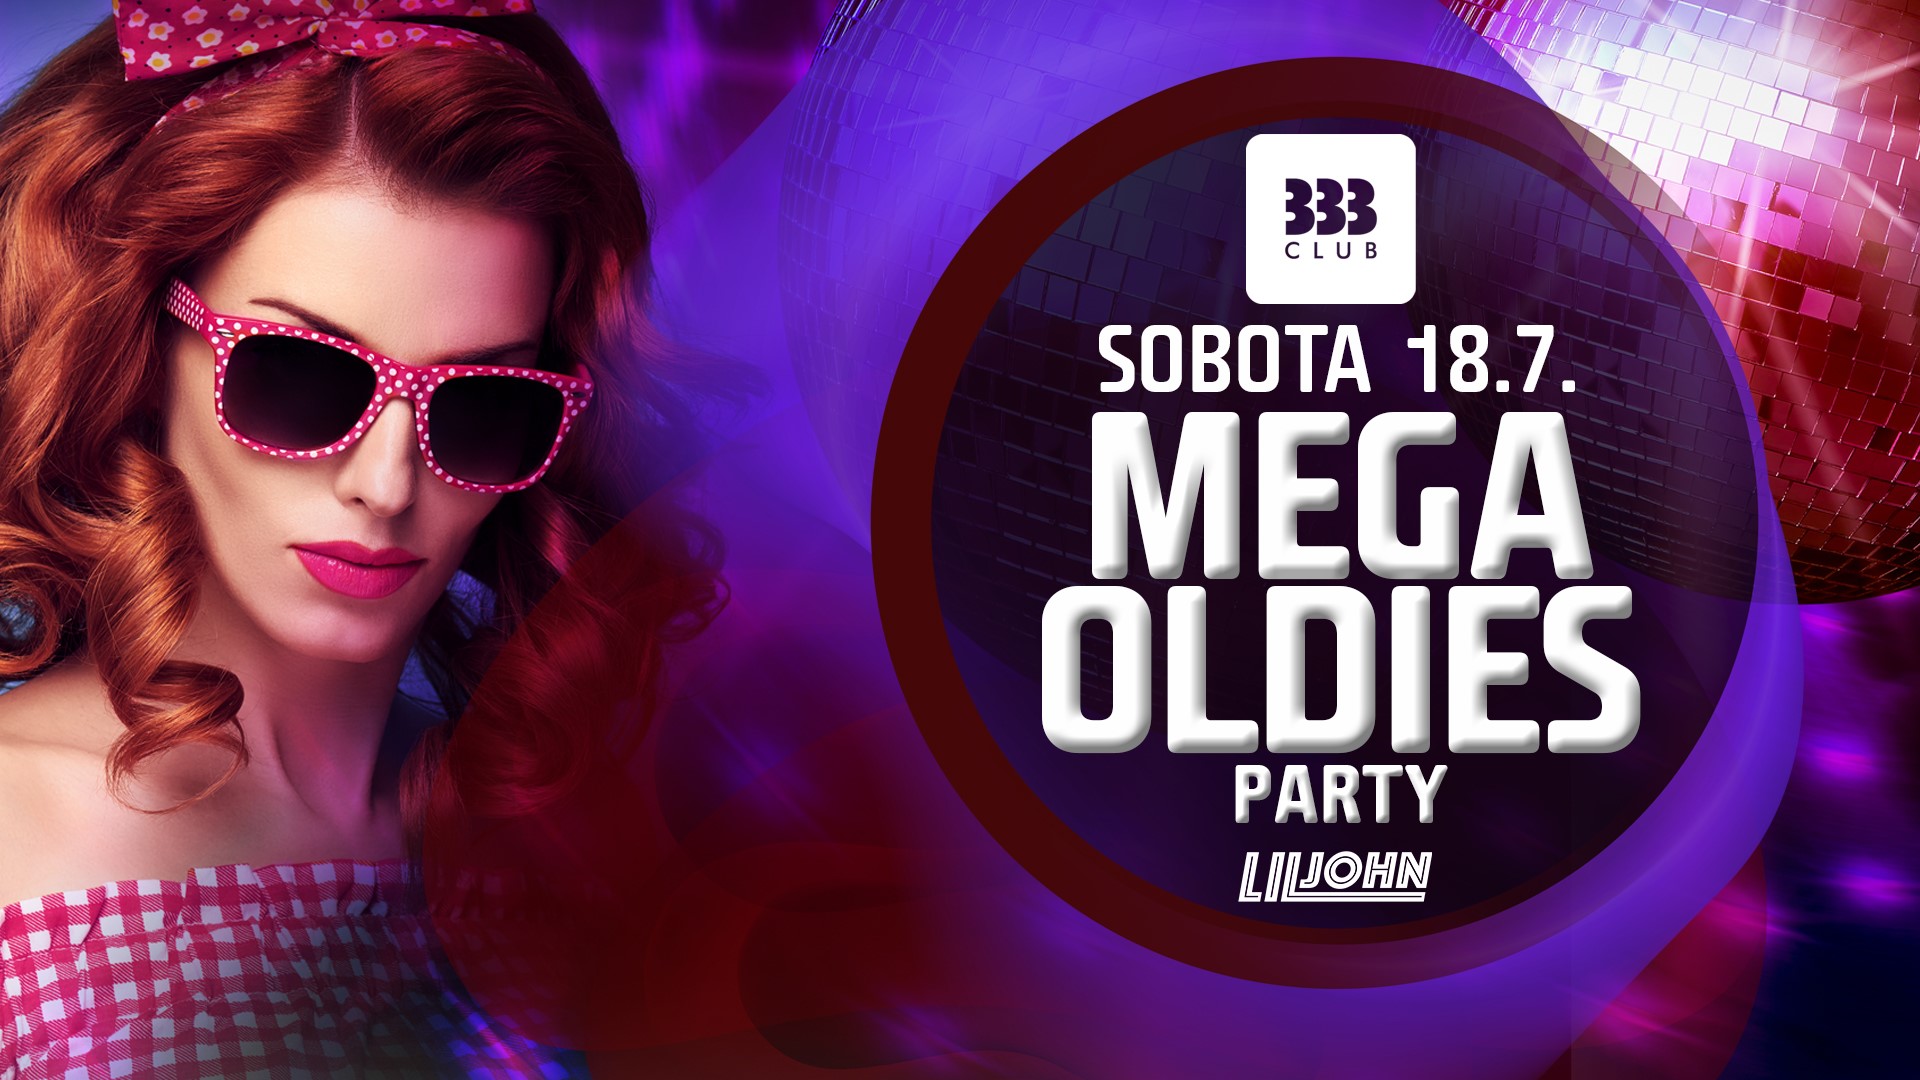 MEGA Oldies Party ☆ 18.7. Club 333